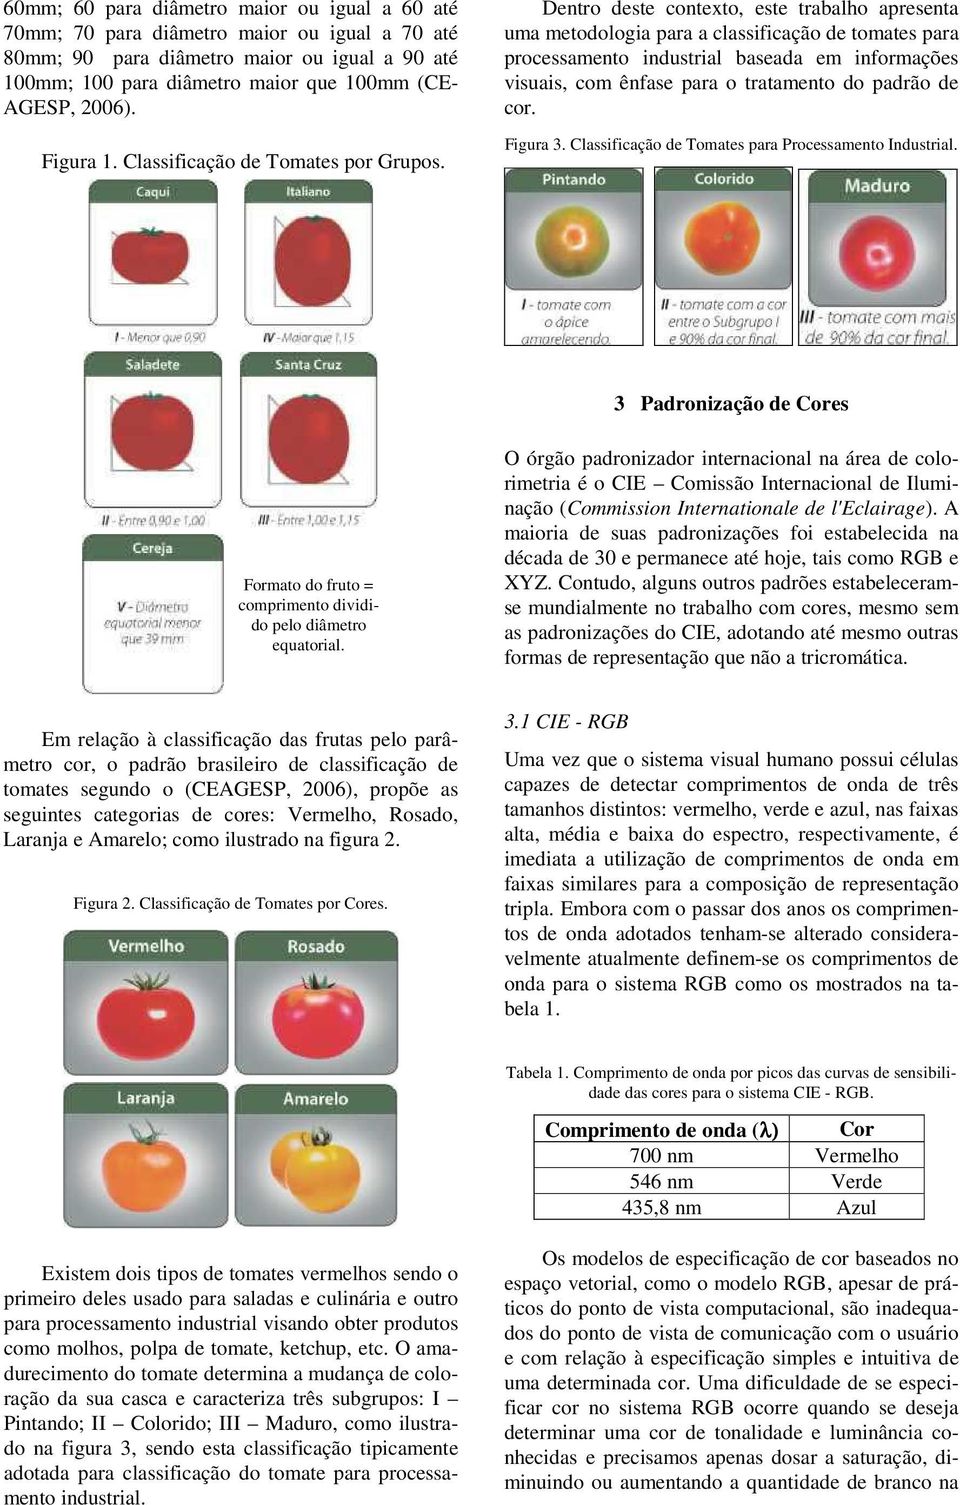 Dentro deste contexto, este trabalho apresenta uma metodologia para a classificação de tomates para processamento industrial baseada em informações visuais, com ênfase para o tratamento do padrão de